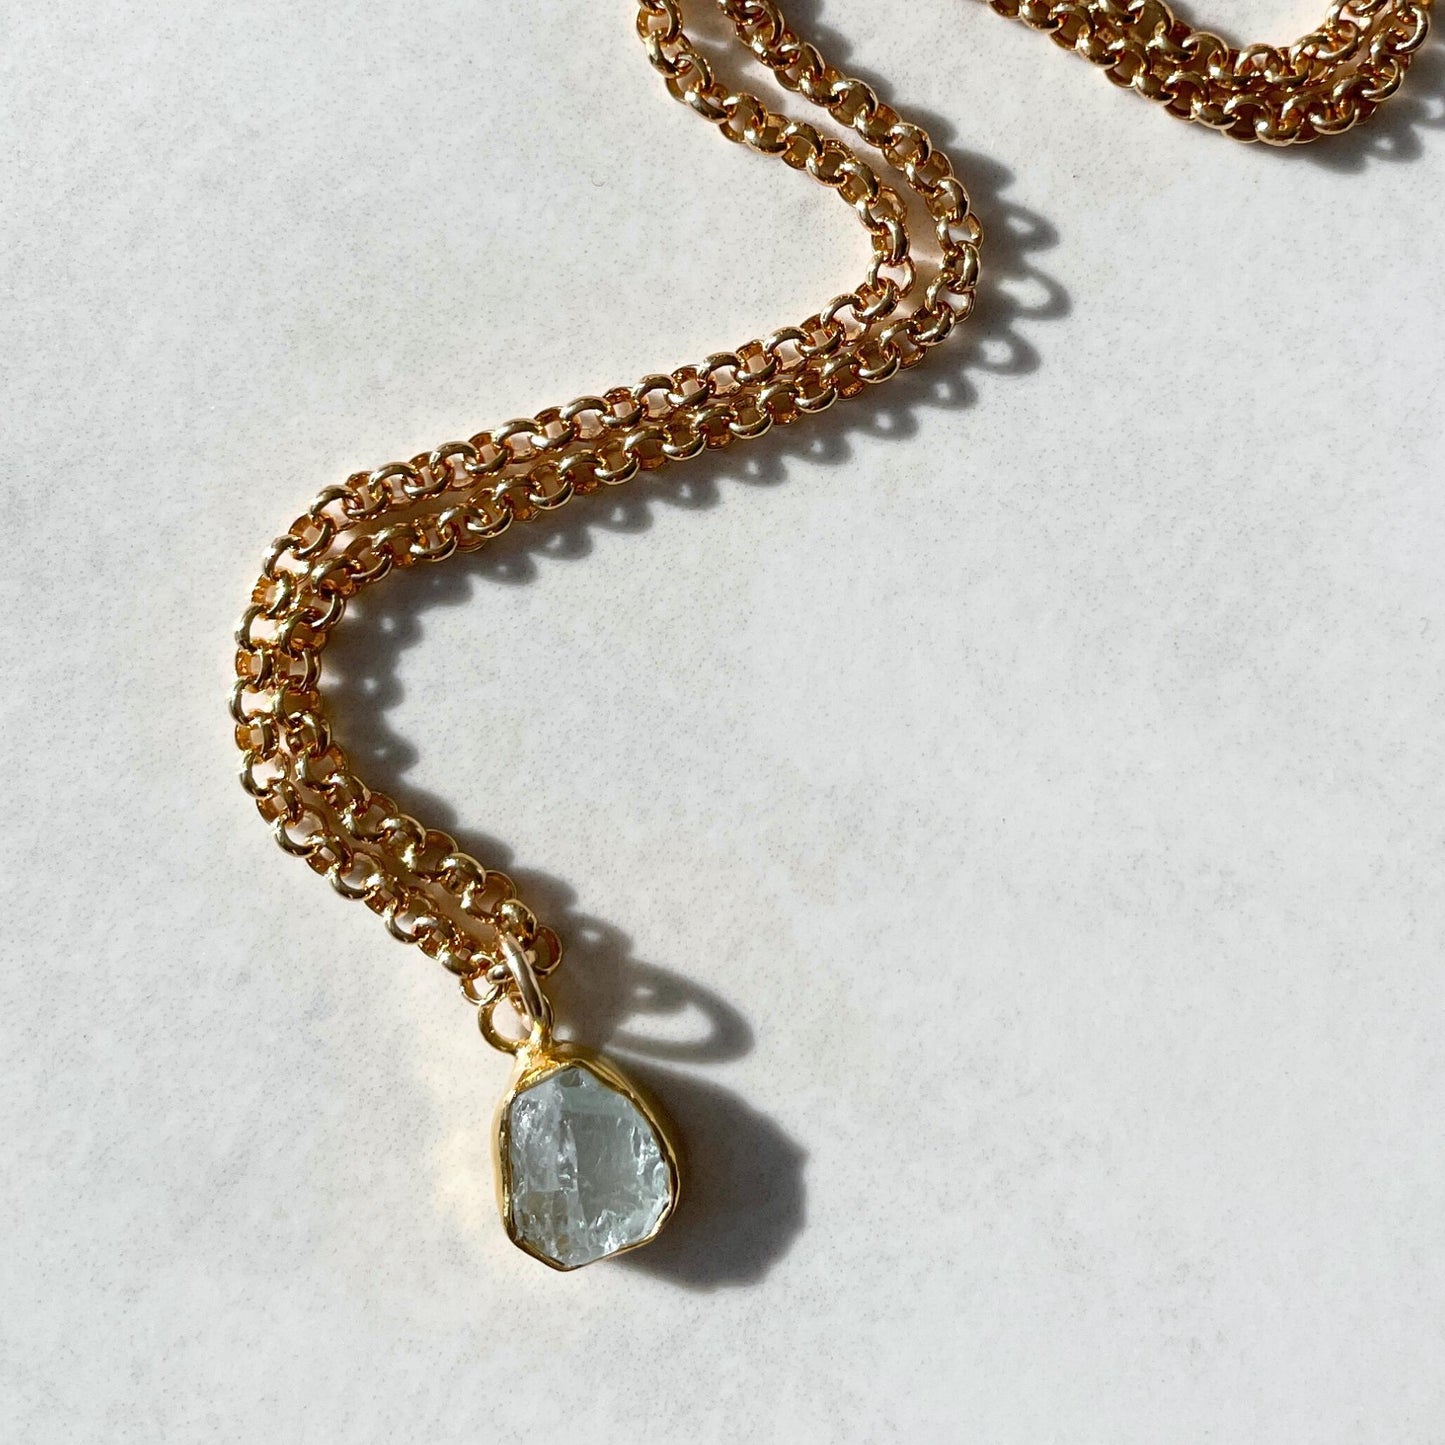 VICTORIAN BELCHER CHAIN NECKLACE – Ruth Taubman Jewelry Design